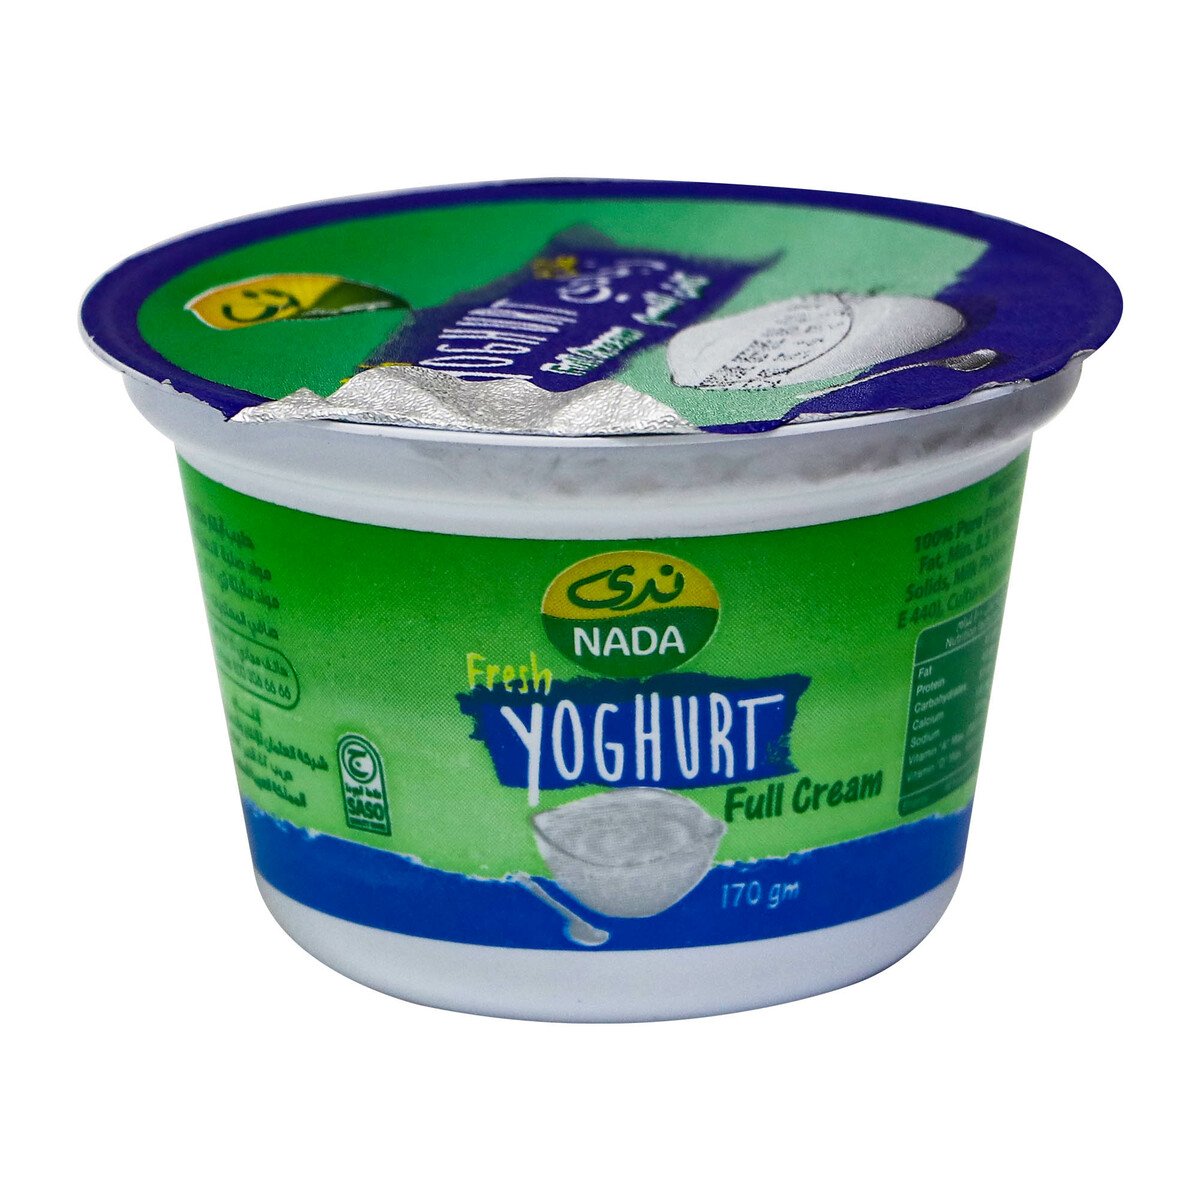 اشتري قم بشراء ندى زبادي طازج كامل الدسم 170 جم Online at Best Price من الموقع - من لولو هايبر ماركت Plain Yoghurt في السعودية